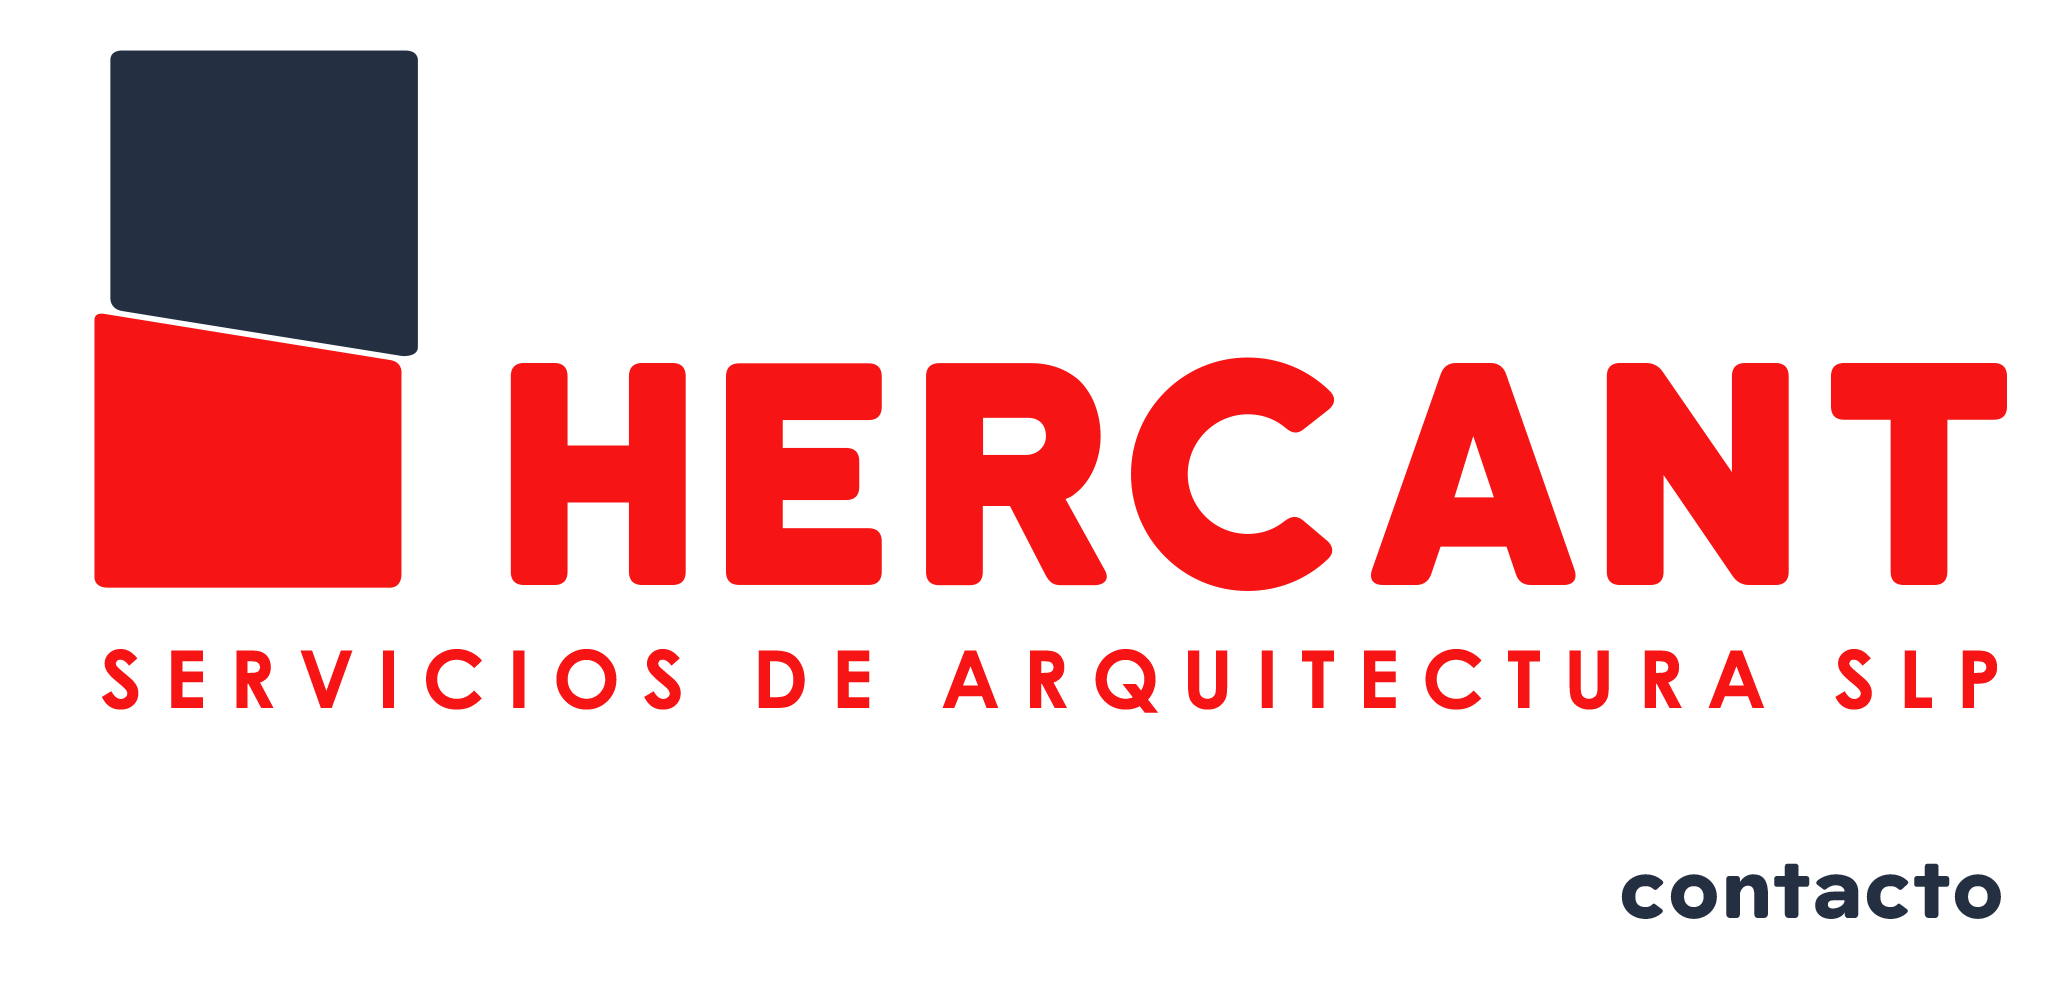 HERCANT 
SERVICIOS DE ARQUITECTURA